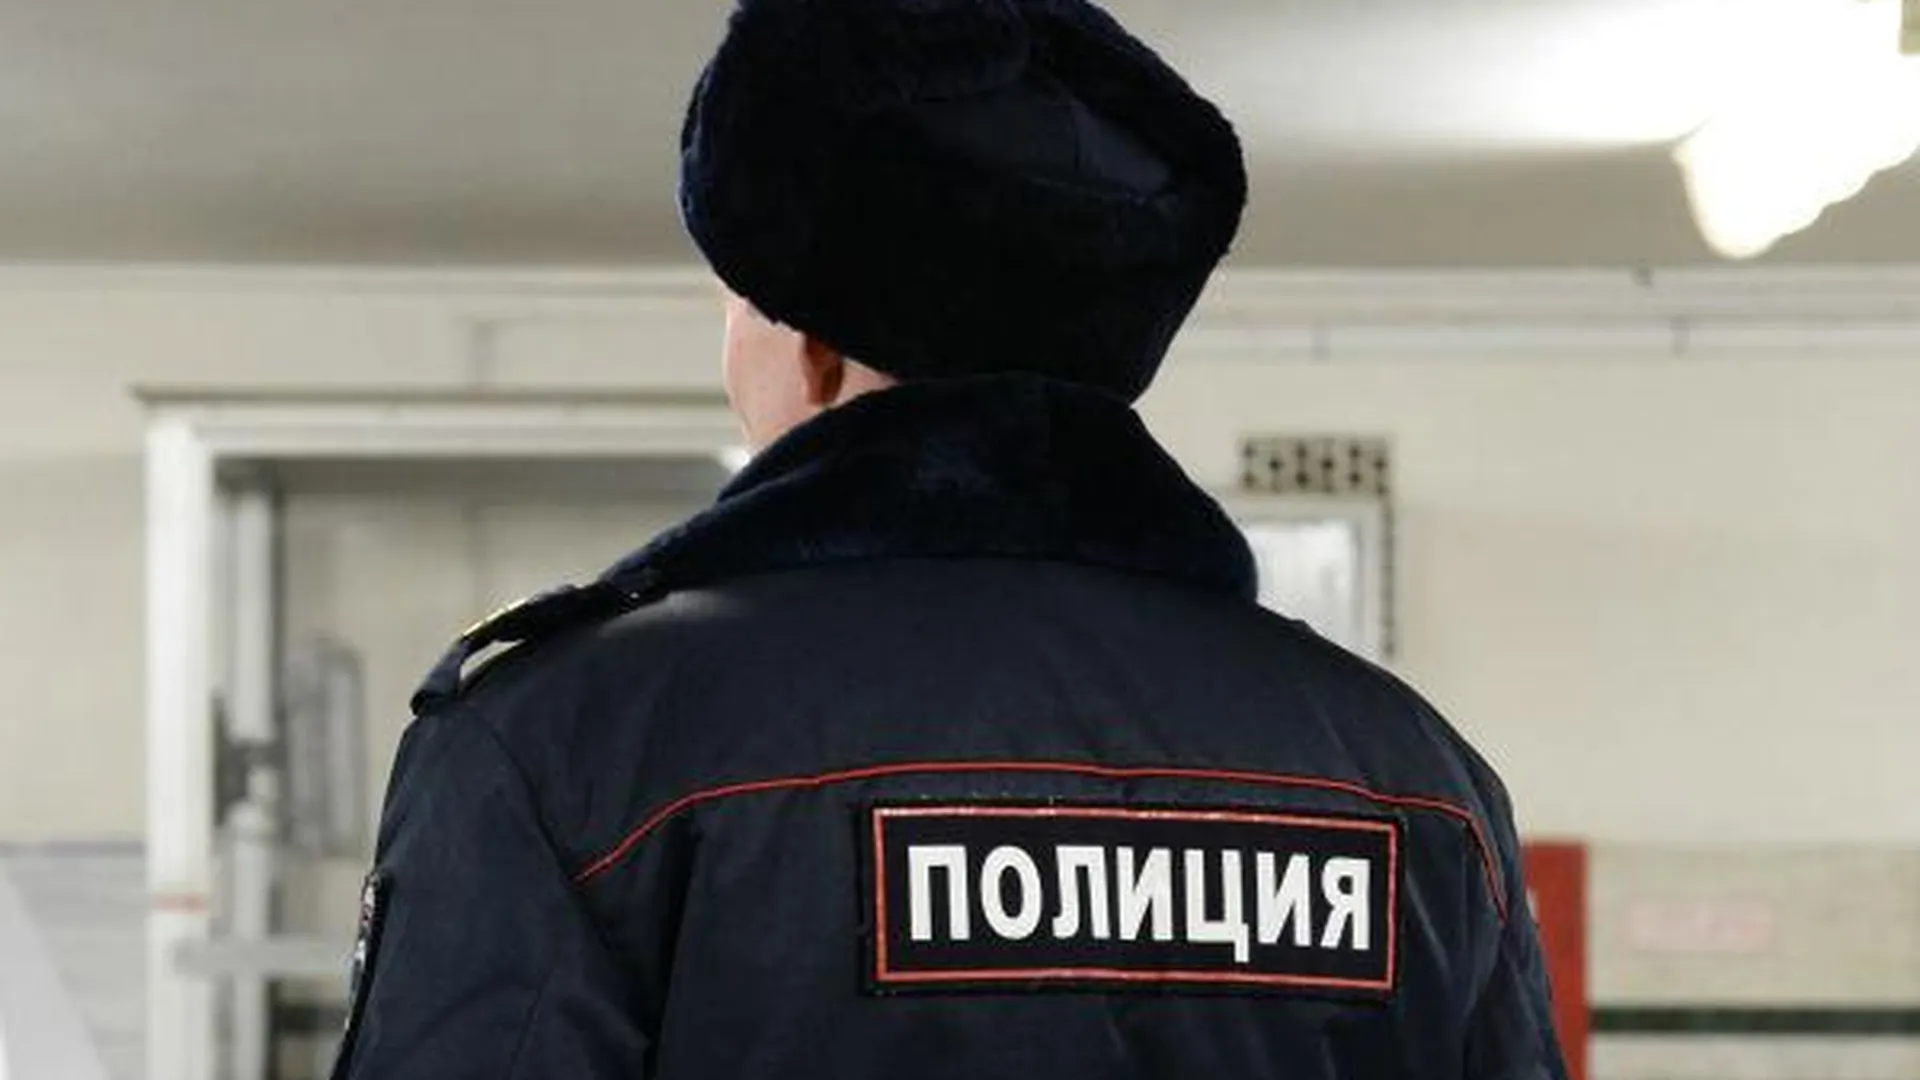 Полицейские изъяли у женщины наркотики в Щелково